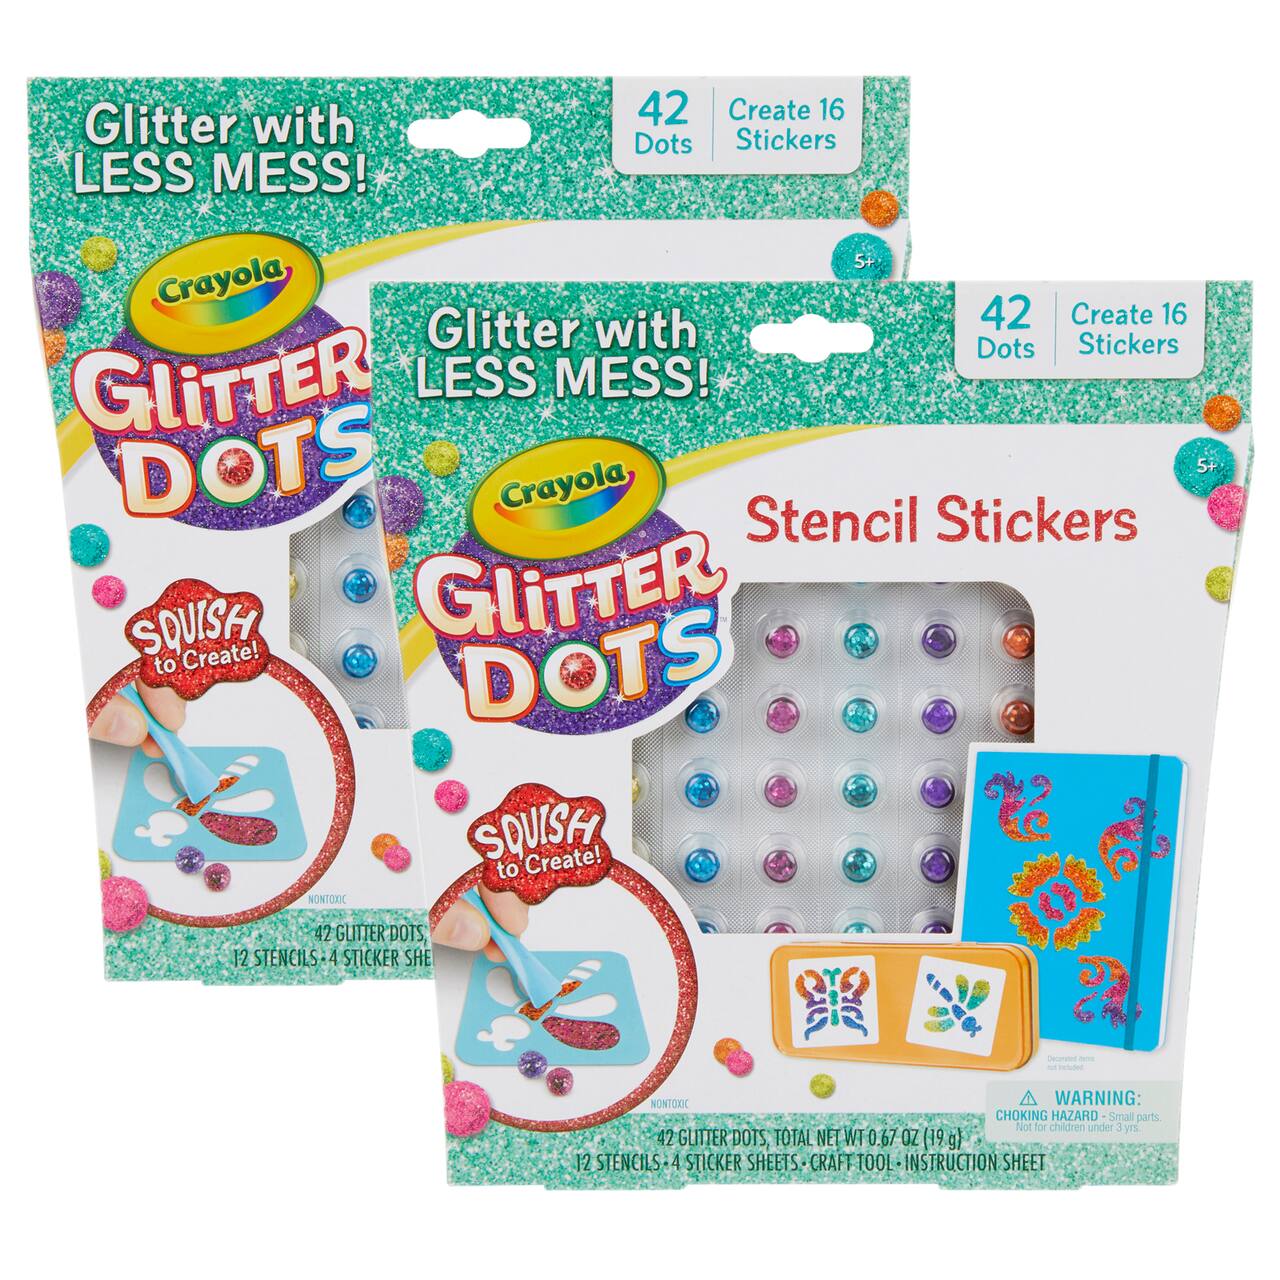 Crayola&#xAE; Glitter Dots Sticker Stencils, 2ct.